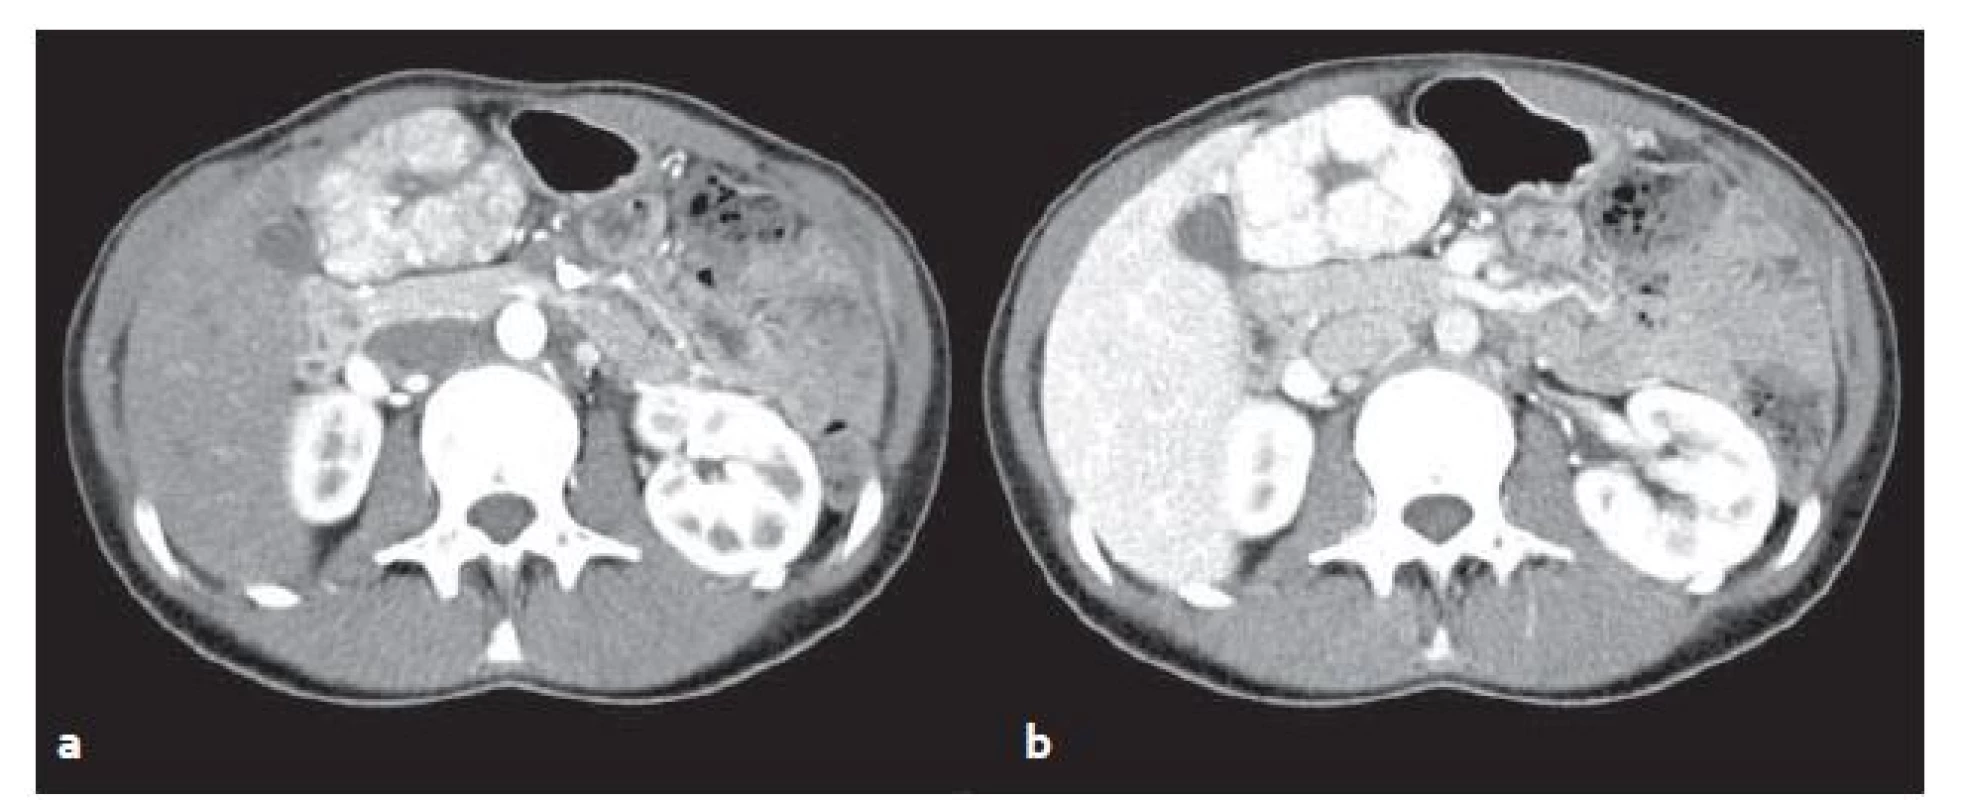 CT vyšetření u stejného pacienta jako na obr. 1 – FNH v arteriální (a) a venózní (b) fázi. V arteriální fázi se FNH oproti játrům výrazně sytí, ve venózní fázi sycení přetrvává.
Fig. 2. CT scans from the same patient as in fig. 1 – FNH in arterial (a) and venous (b) phase. In the arterial phase FNH significantly feeds contrast medium in comparison with surrounding liver parenchyma, in venous phase saturation persists.